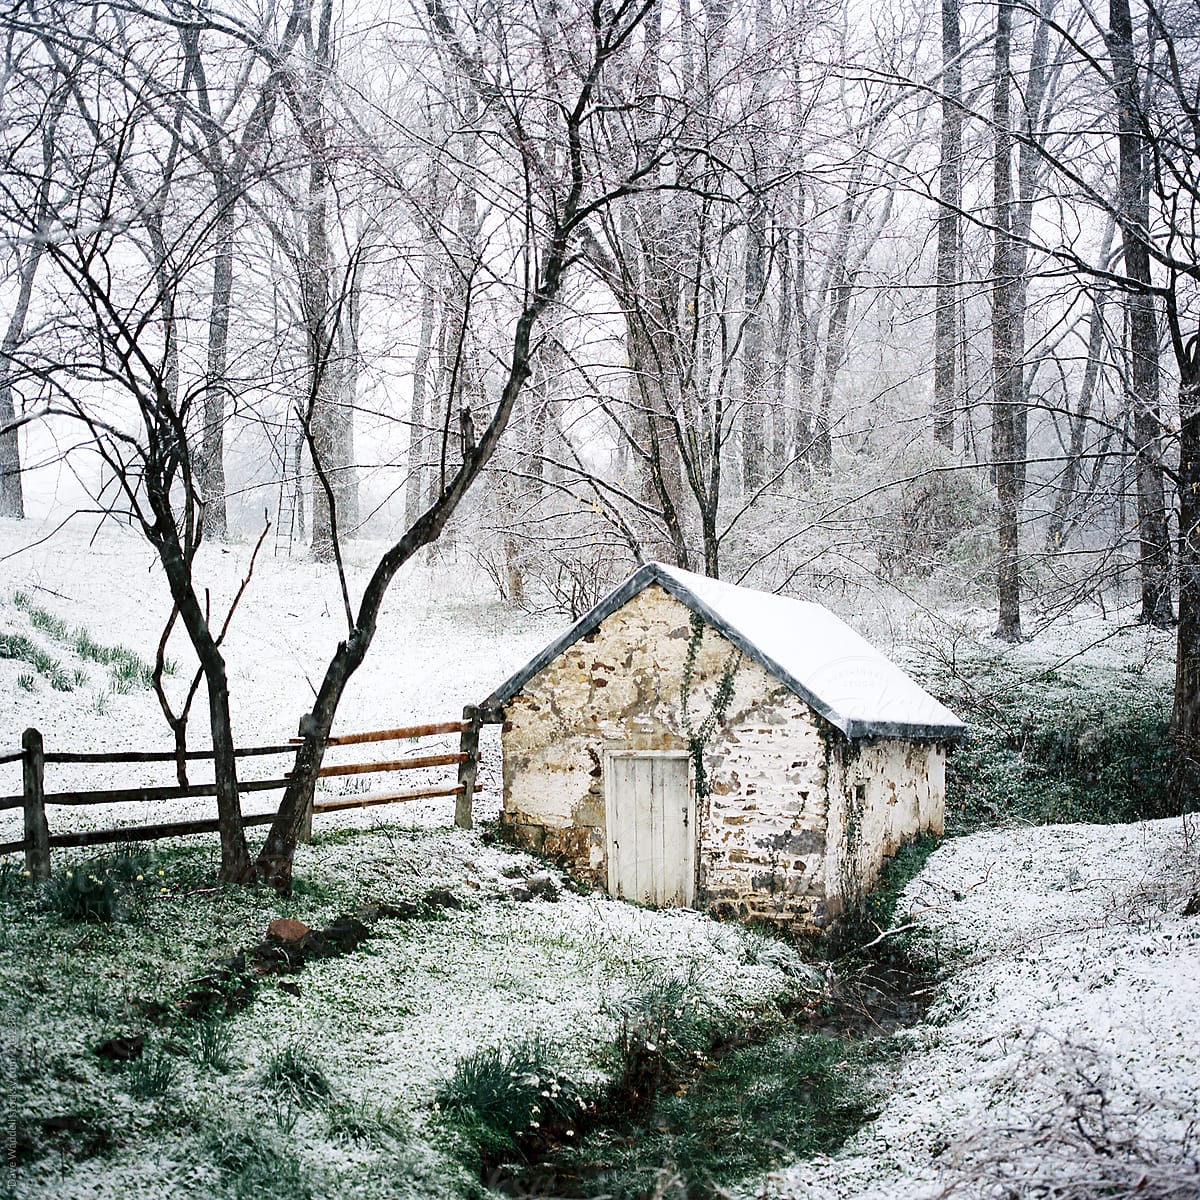 A Pennsylvania Springhouse after a short spring snowfall